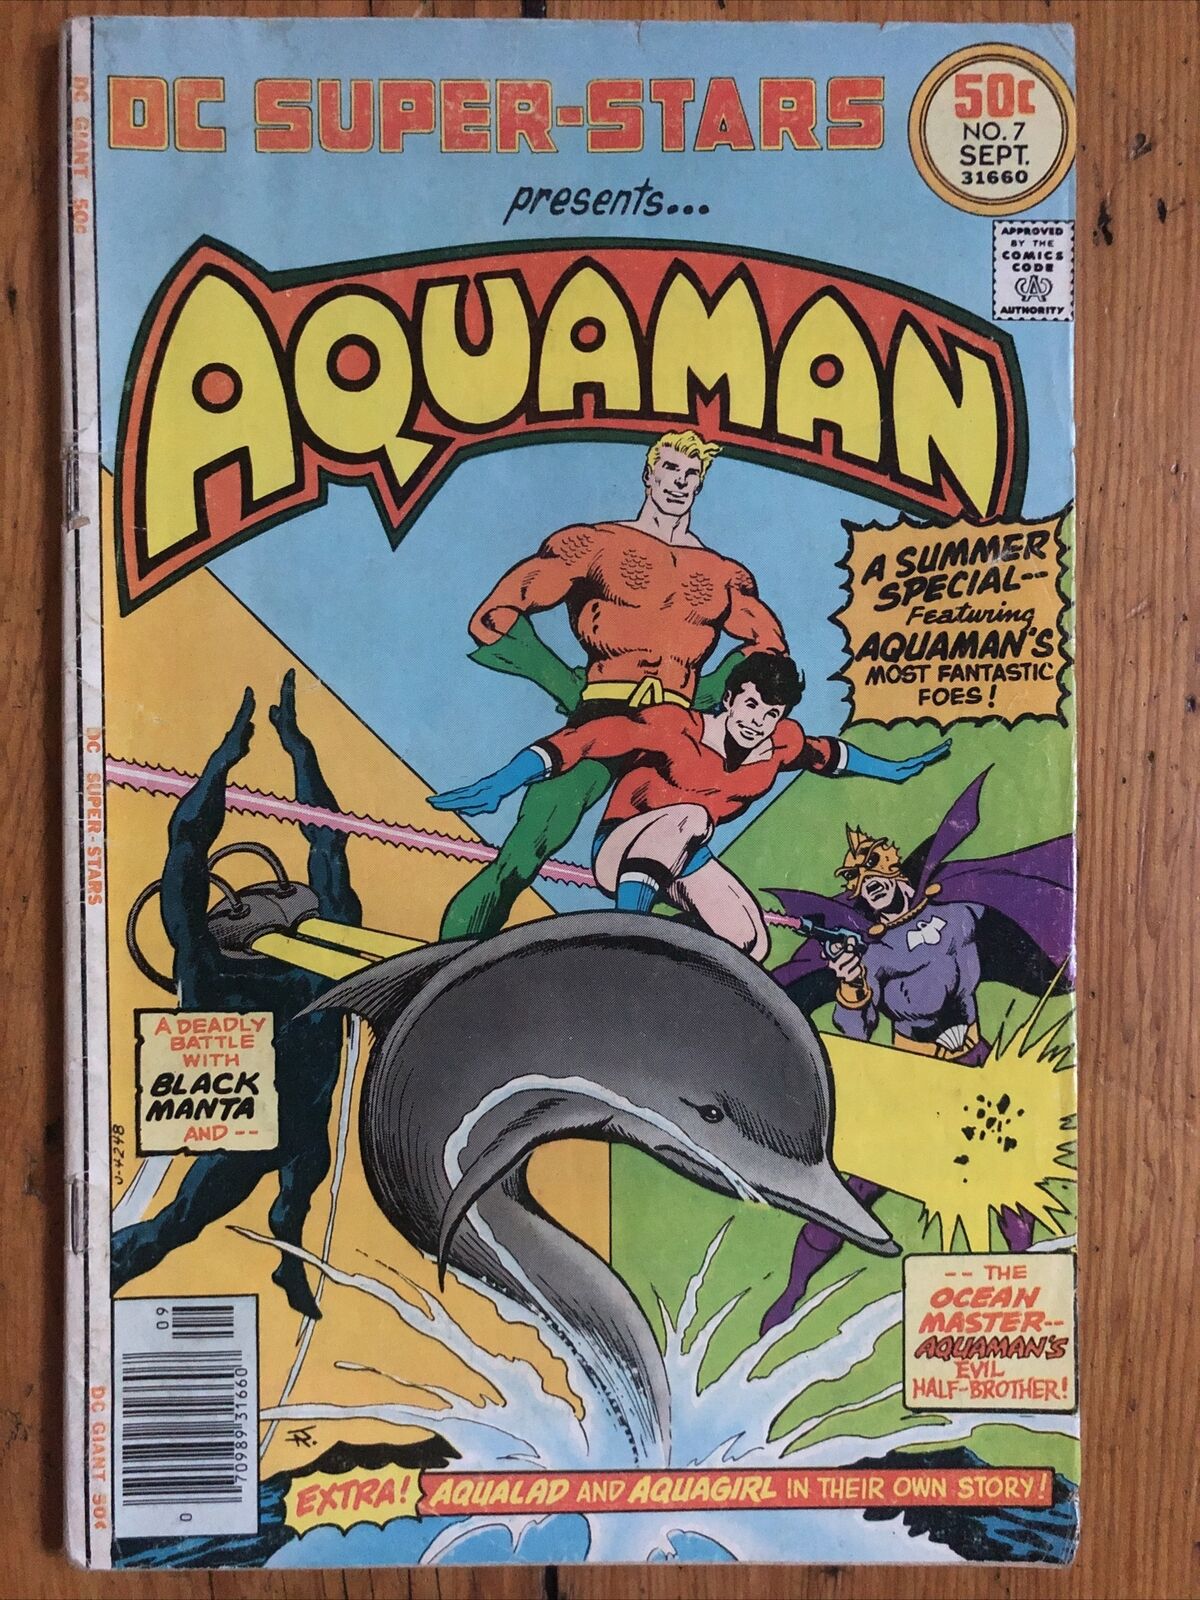 DC Super-Stars Presents.. Aquaman (1976) feat. Black Manta & Aqualad (~GOOD)